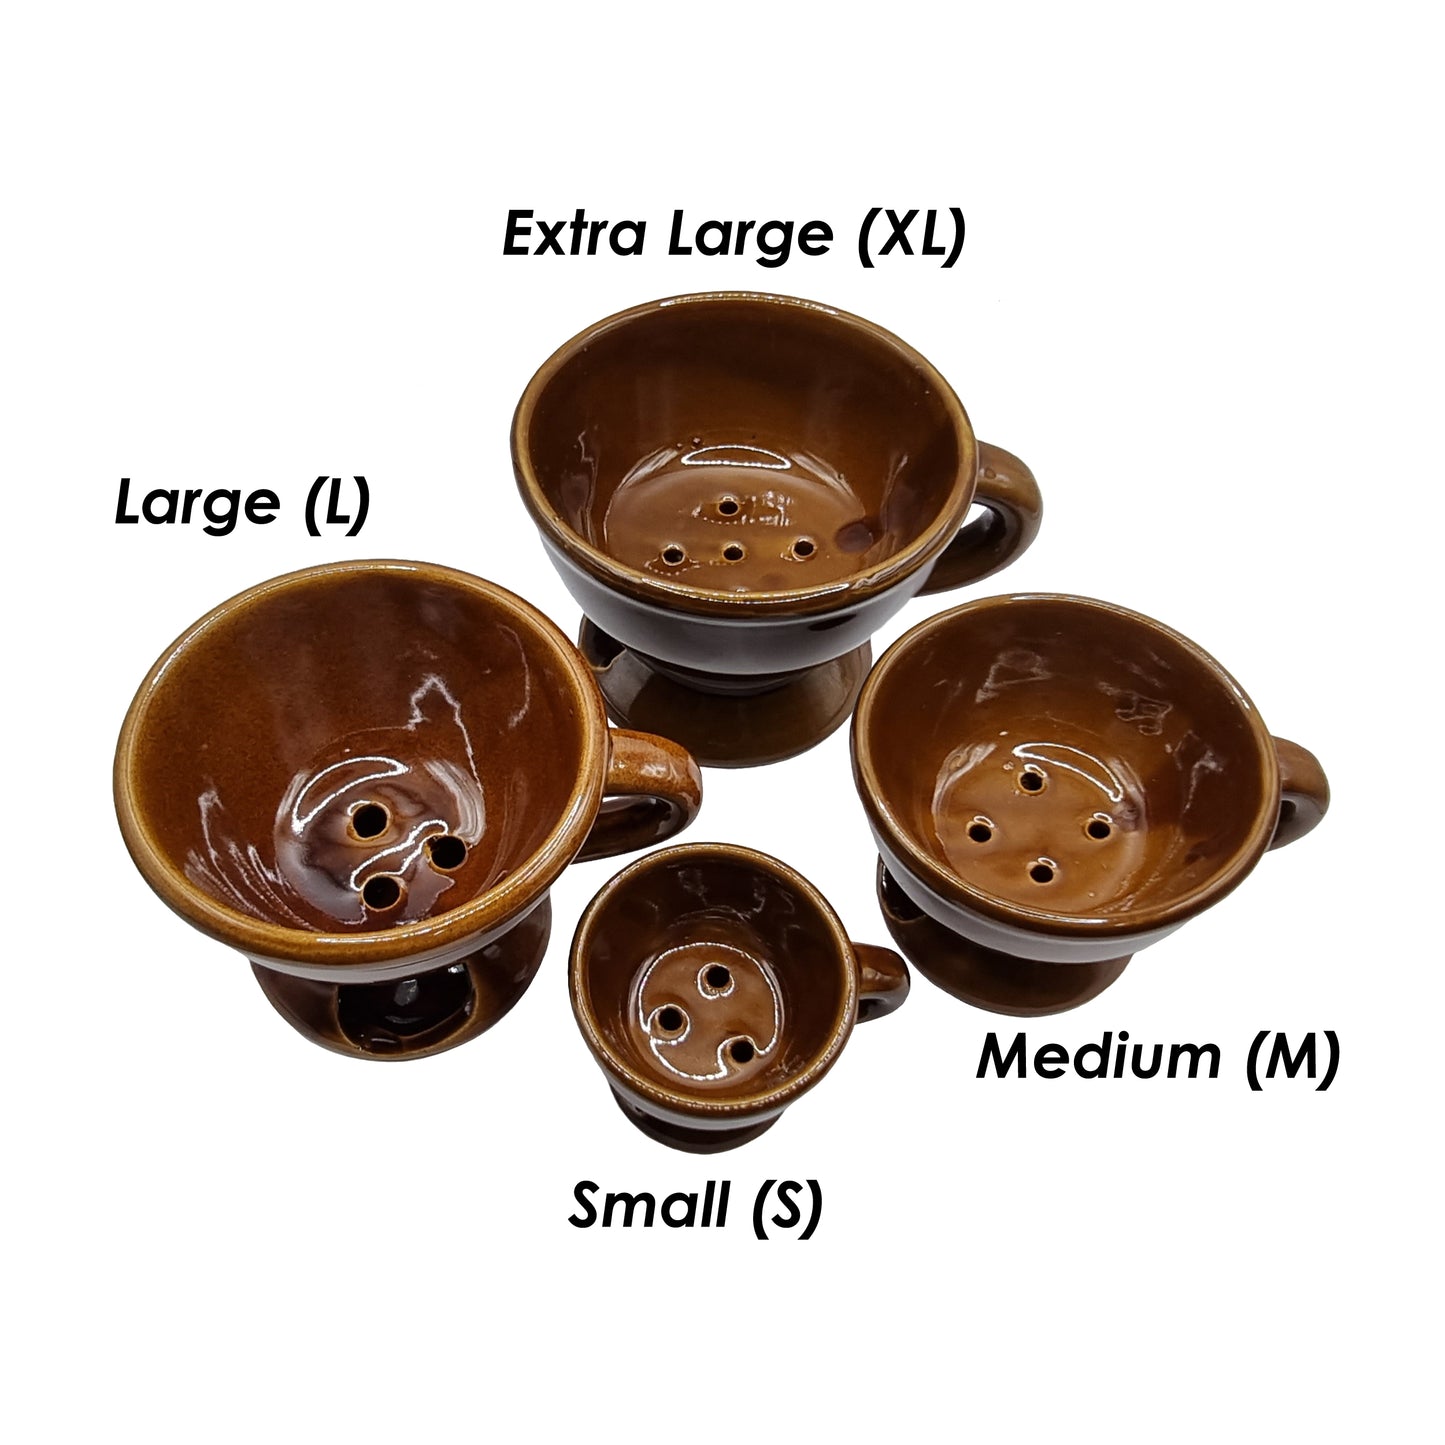 Porcelain Incense Burner – Brown Colour